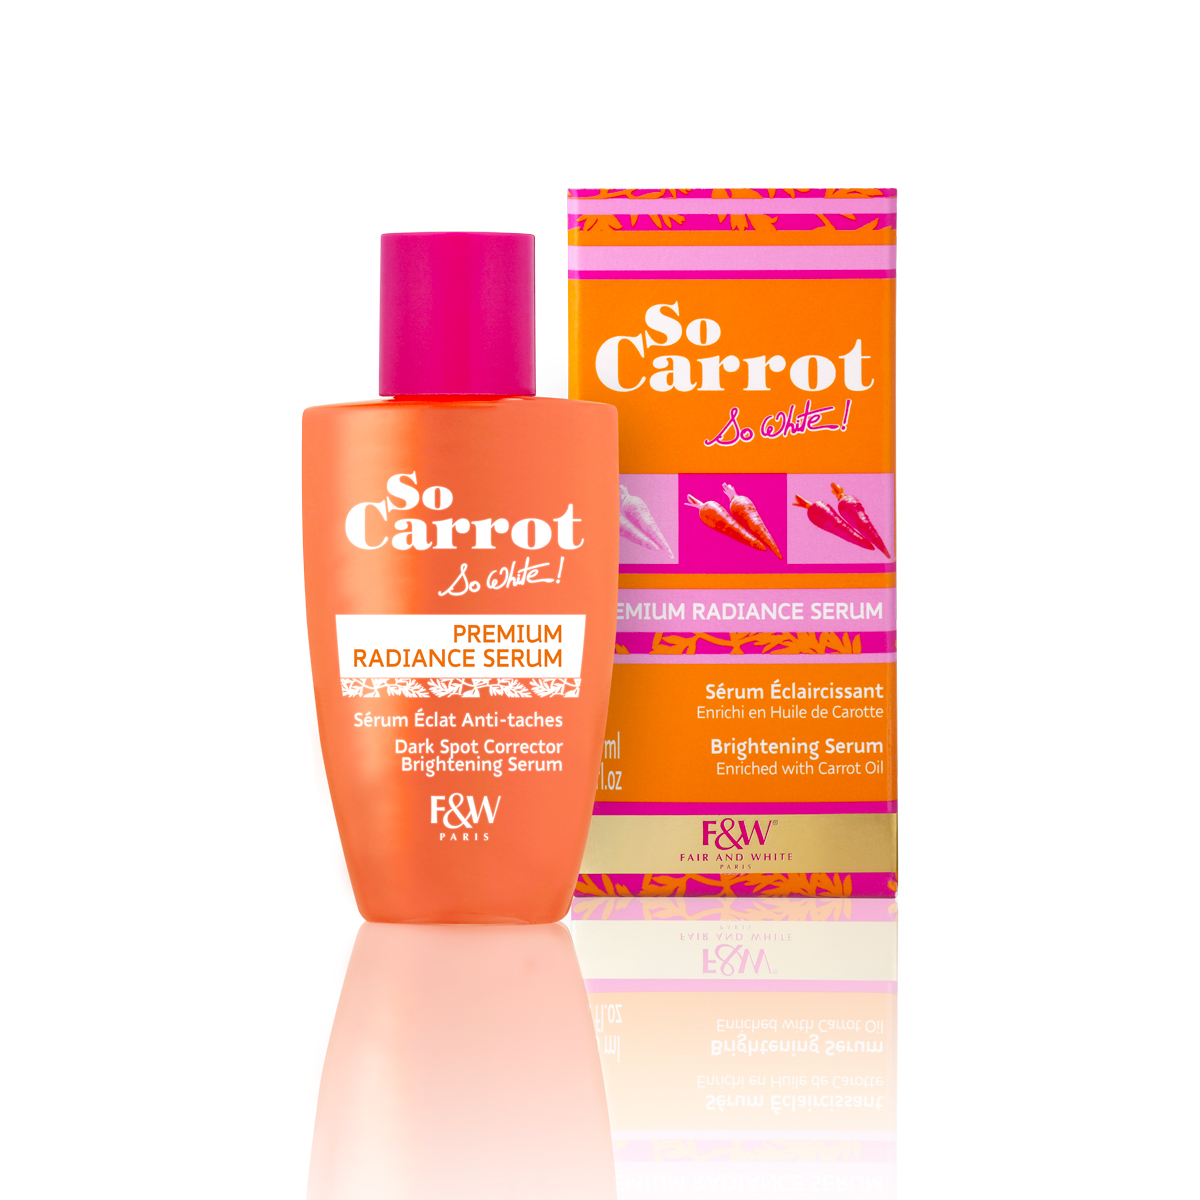 Premium Radiance Serum - Srum Eclaircissant | So Carrot !